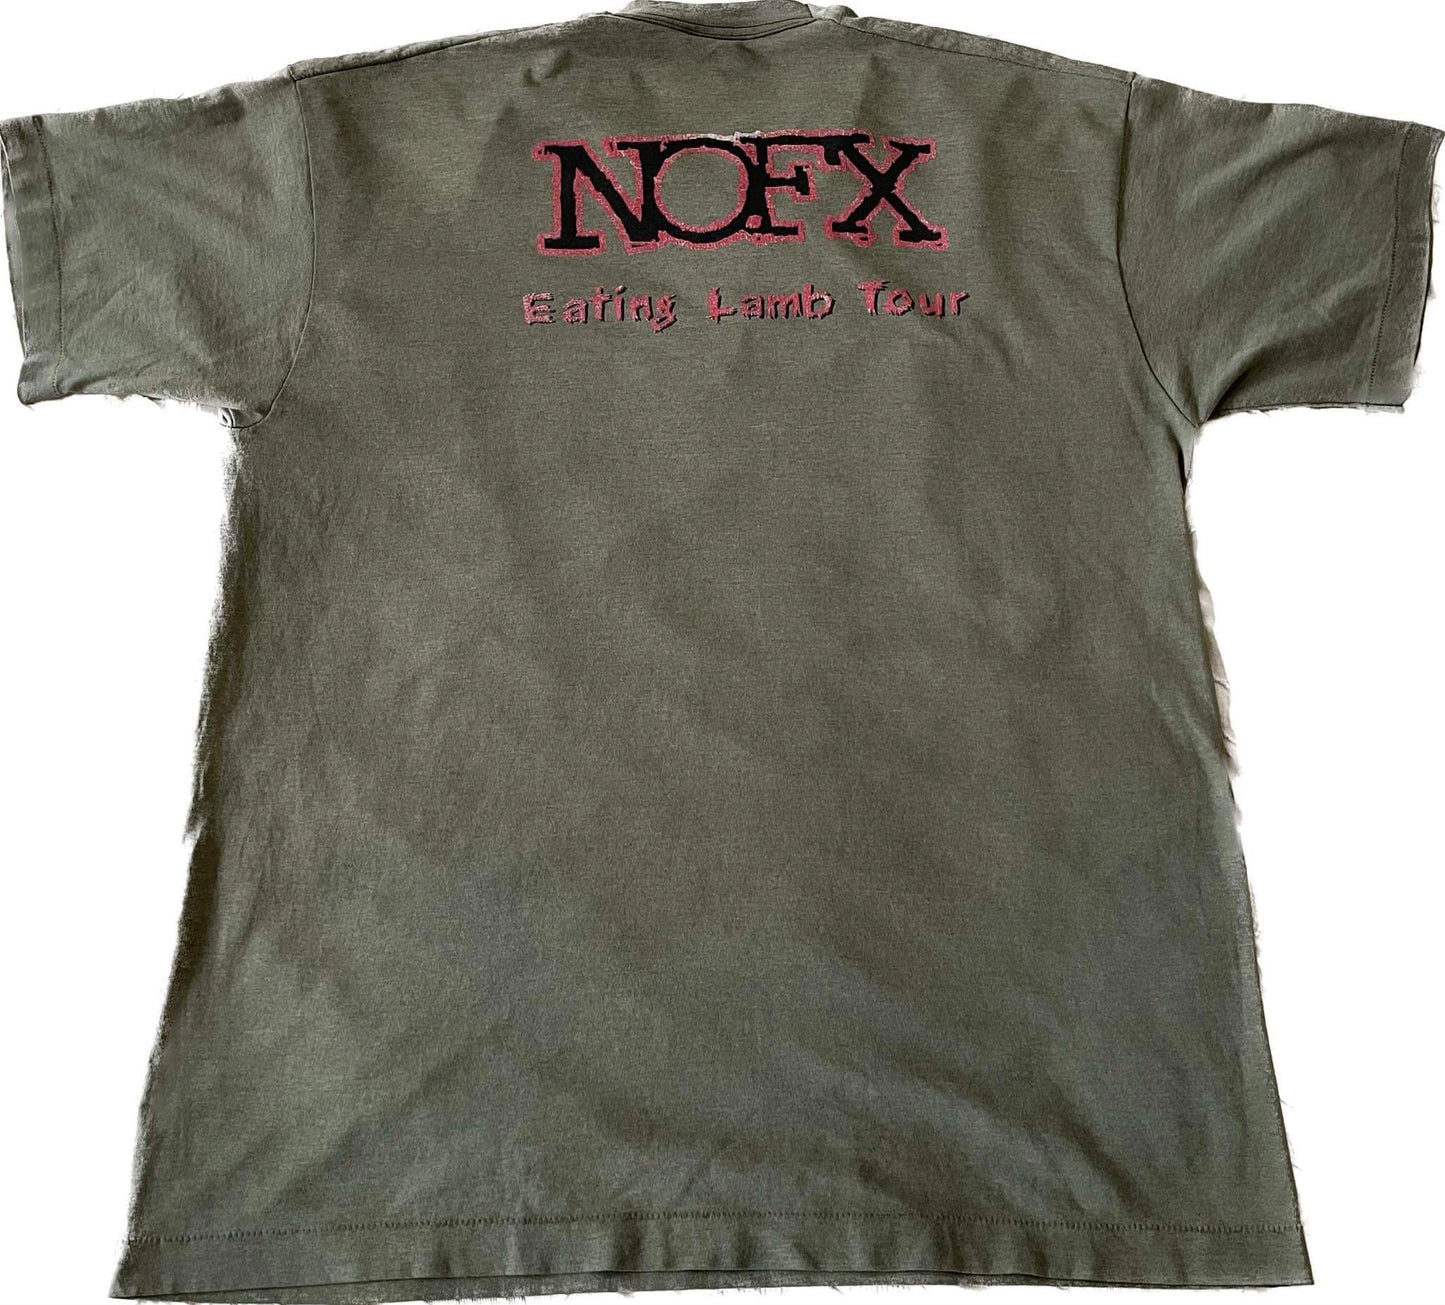 NOFX - Eating Lamb Tour 1996 - Original Vintage t-shirt